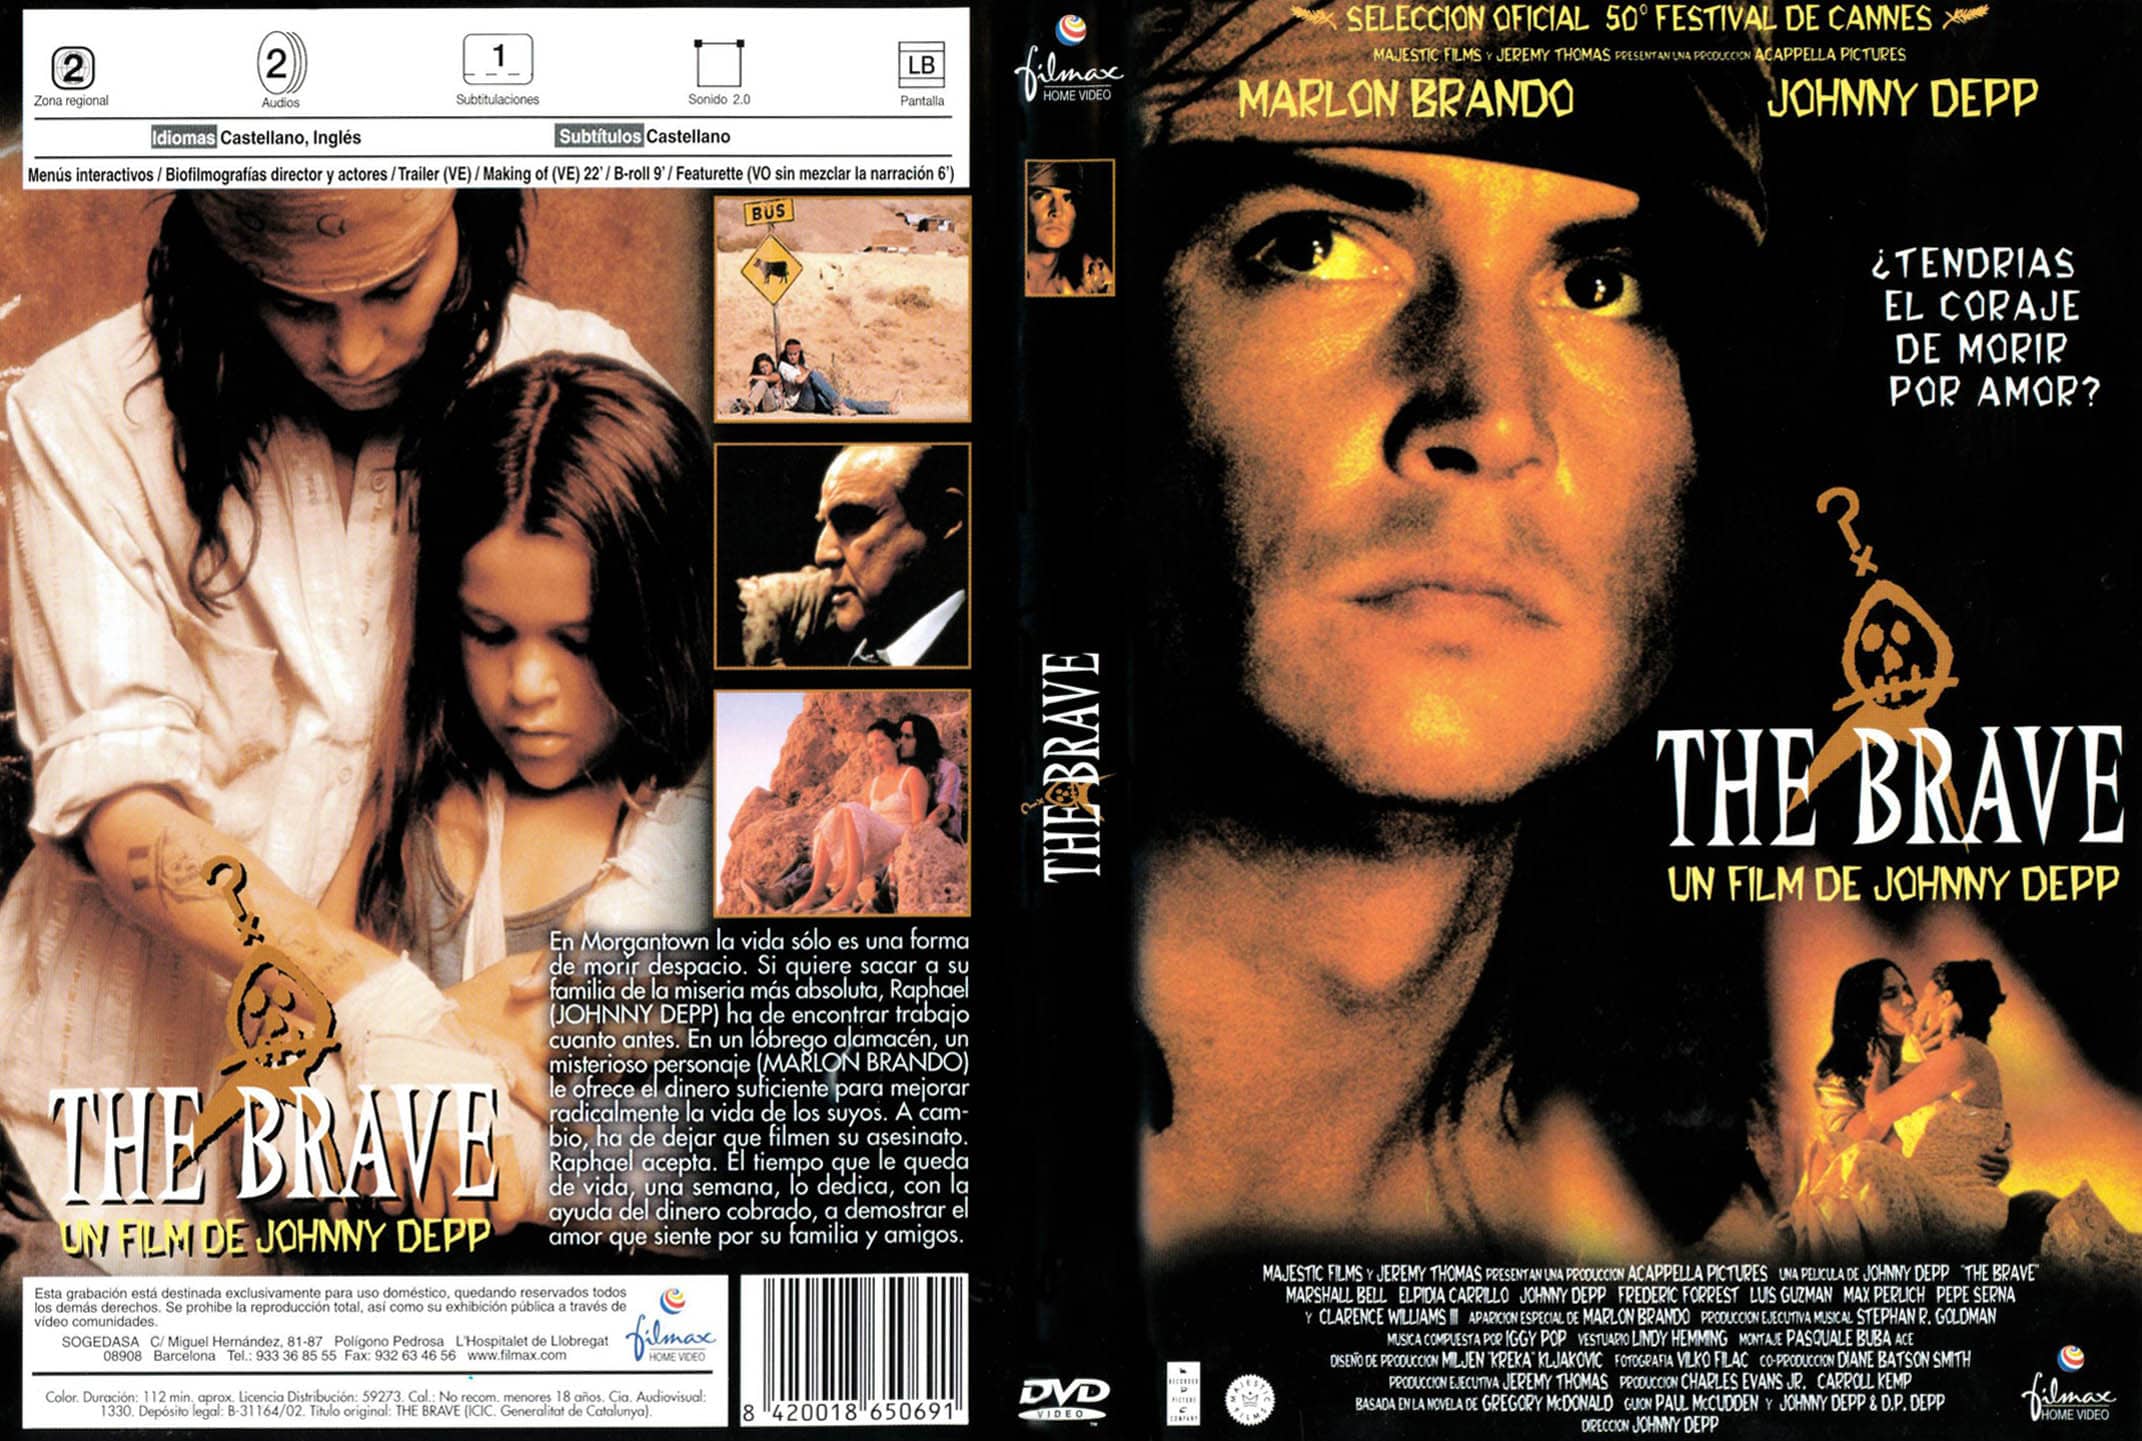 The Brave (1997) (Credits: IMDb)